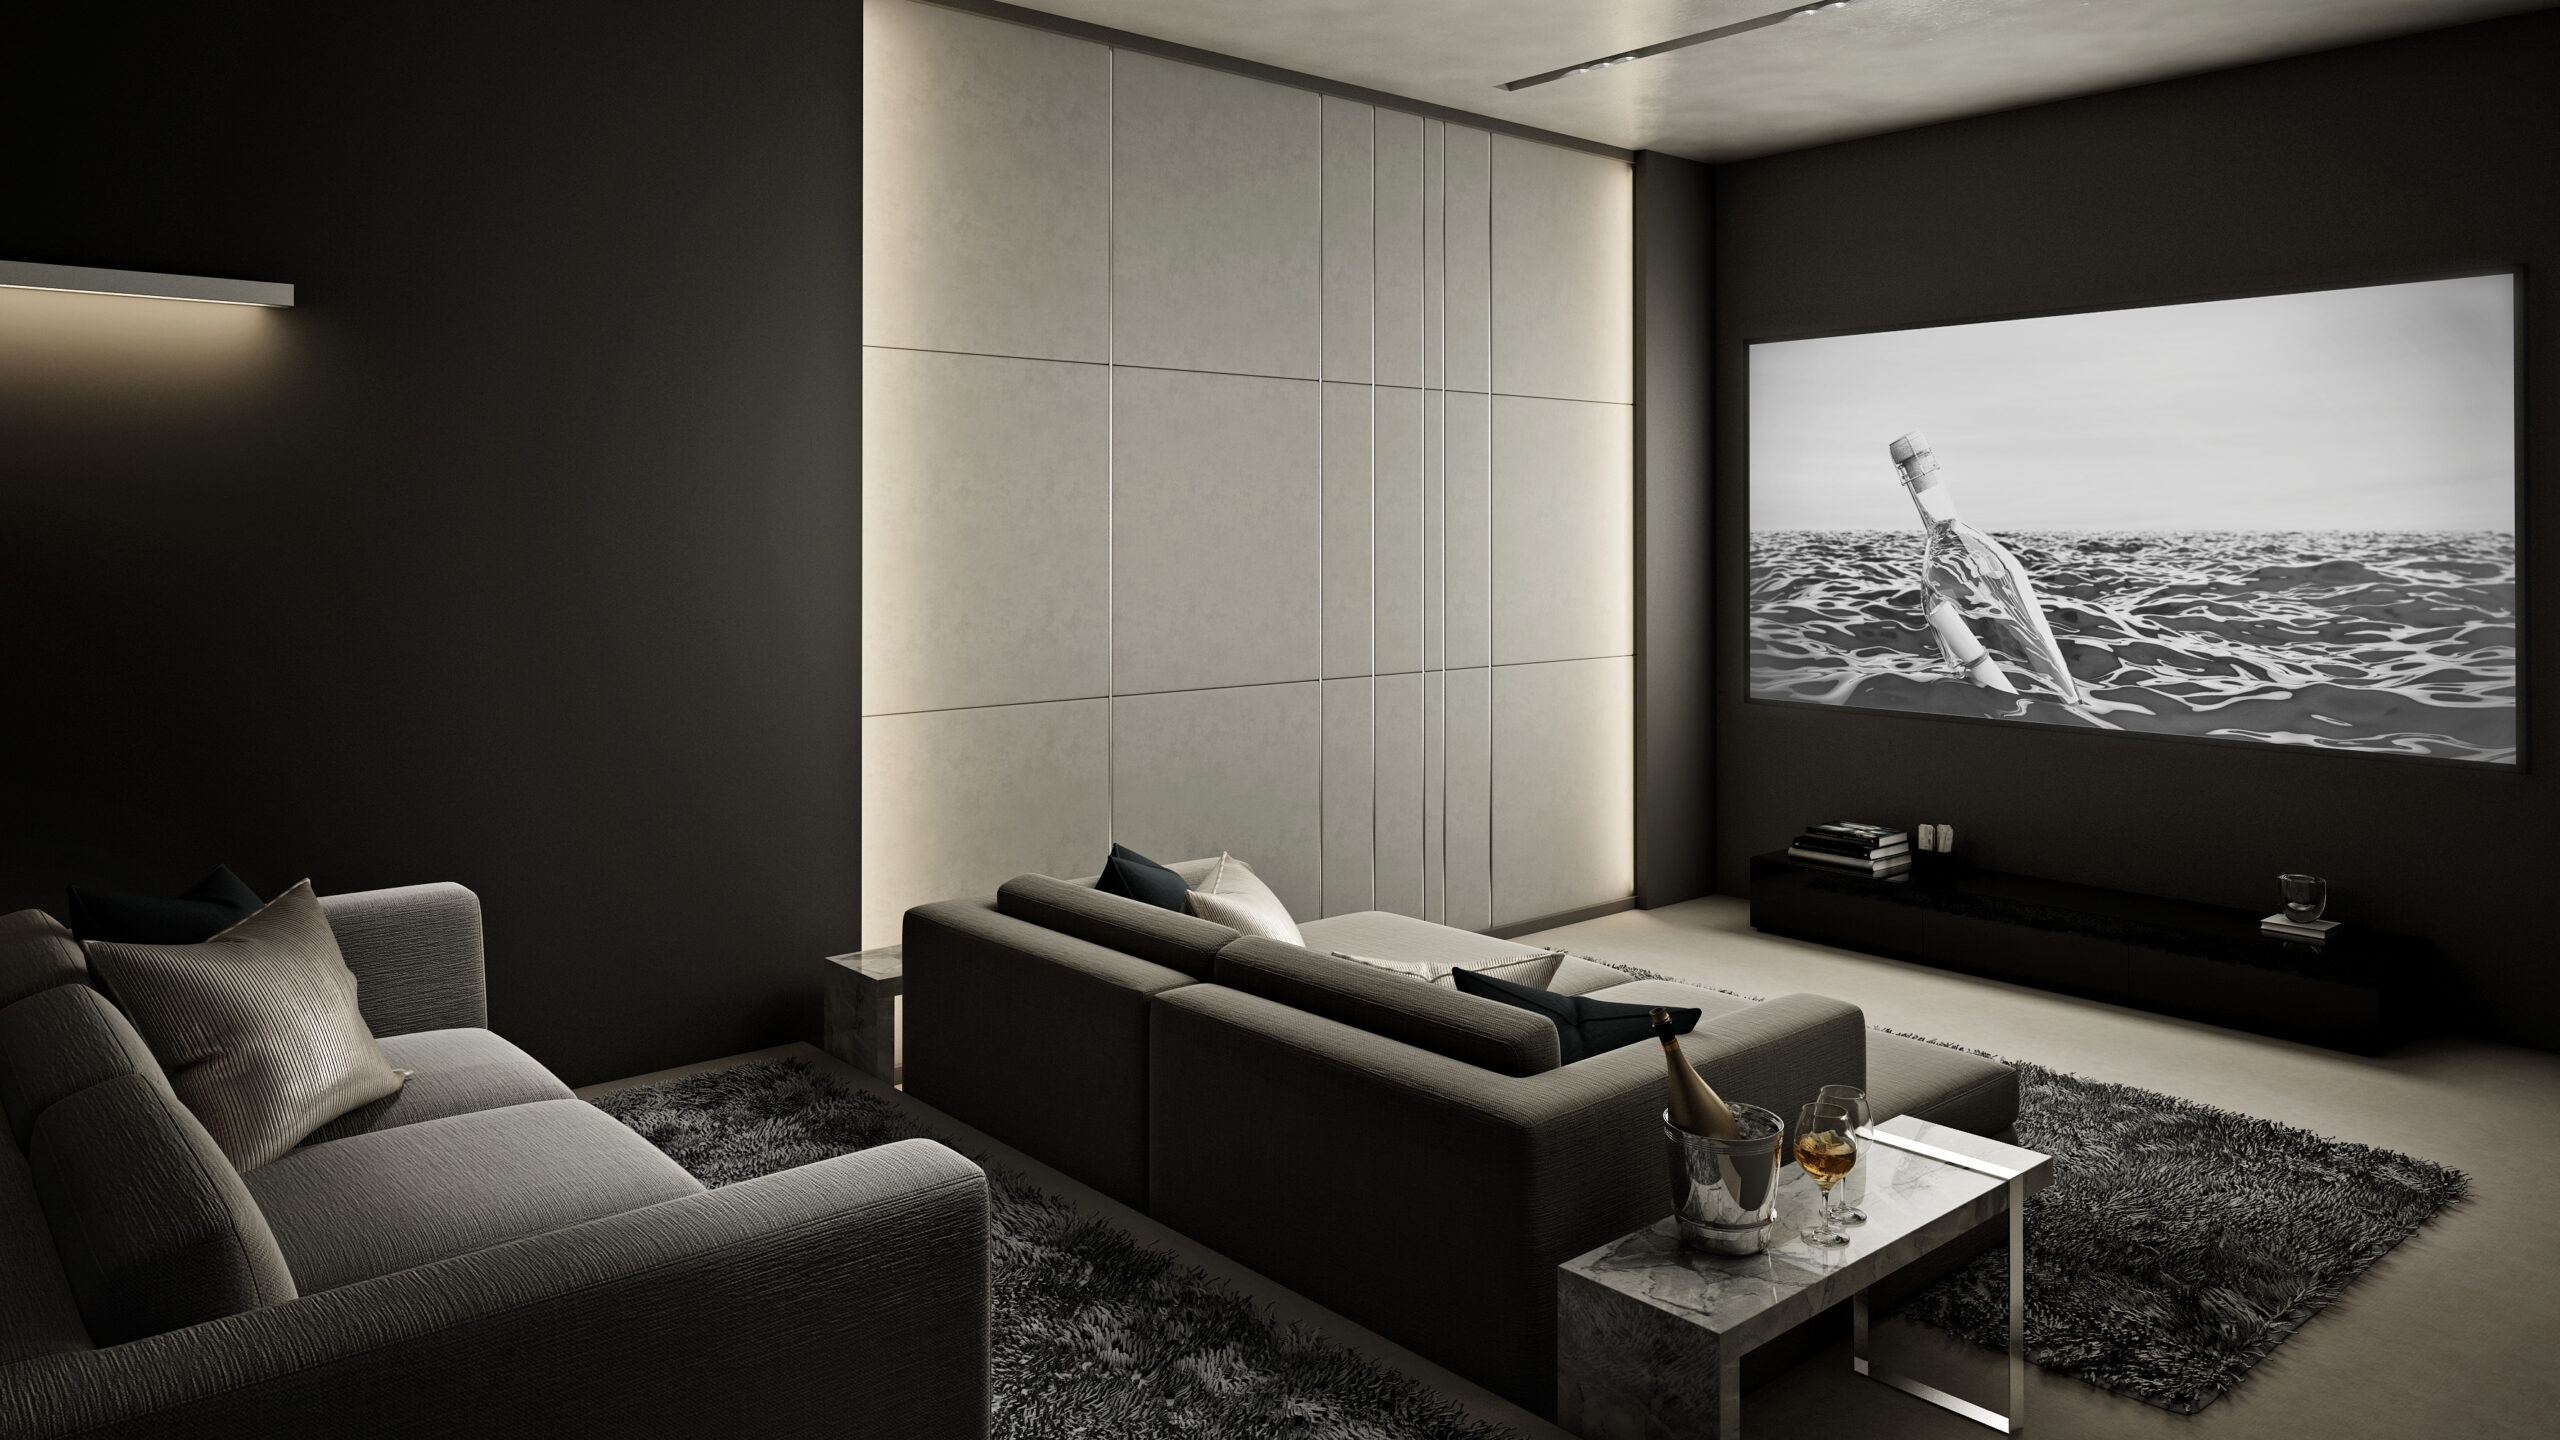 Essex AV | Home Cinema | Smart Homes | TV Installation